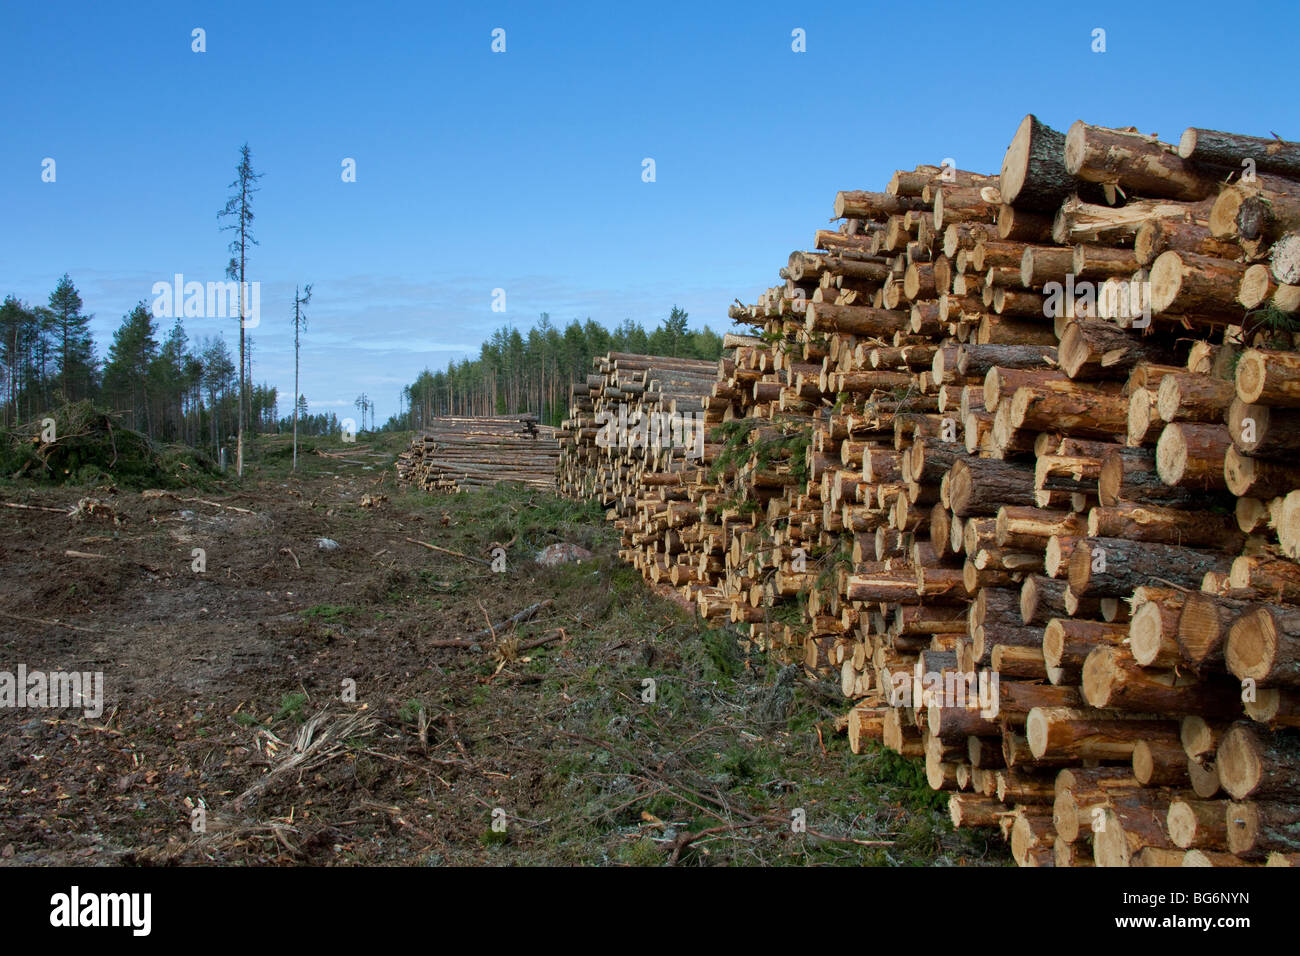 Industrie forestière montrant pile de grumes coupées / arbres / bois de forêt de pins, la Suède Banque D'Images